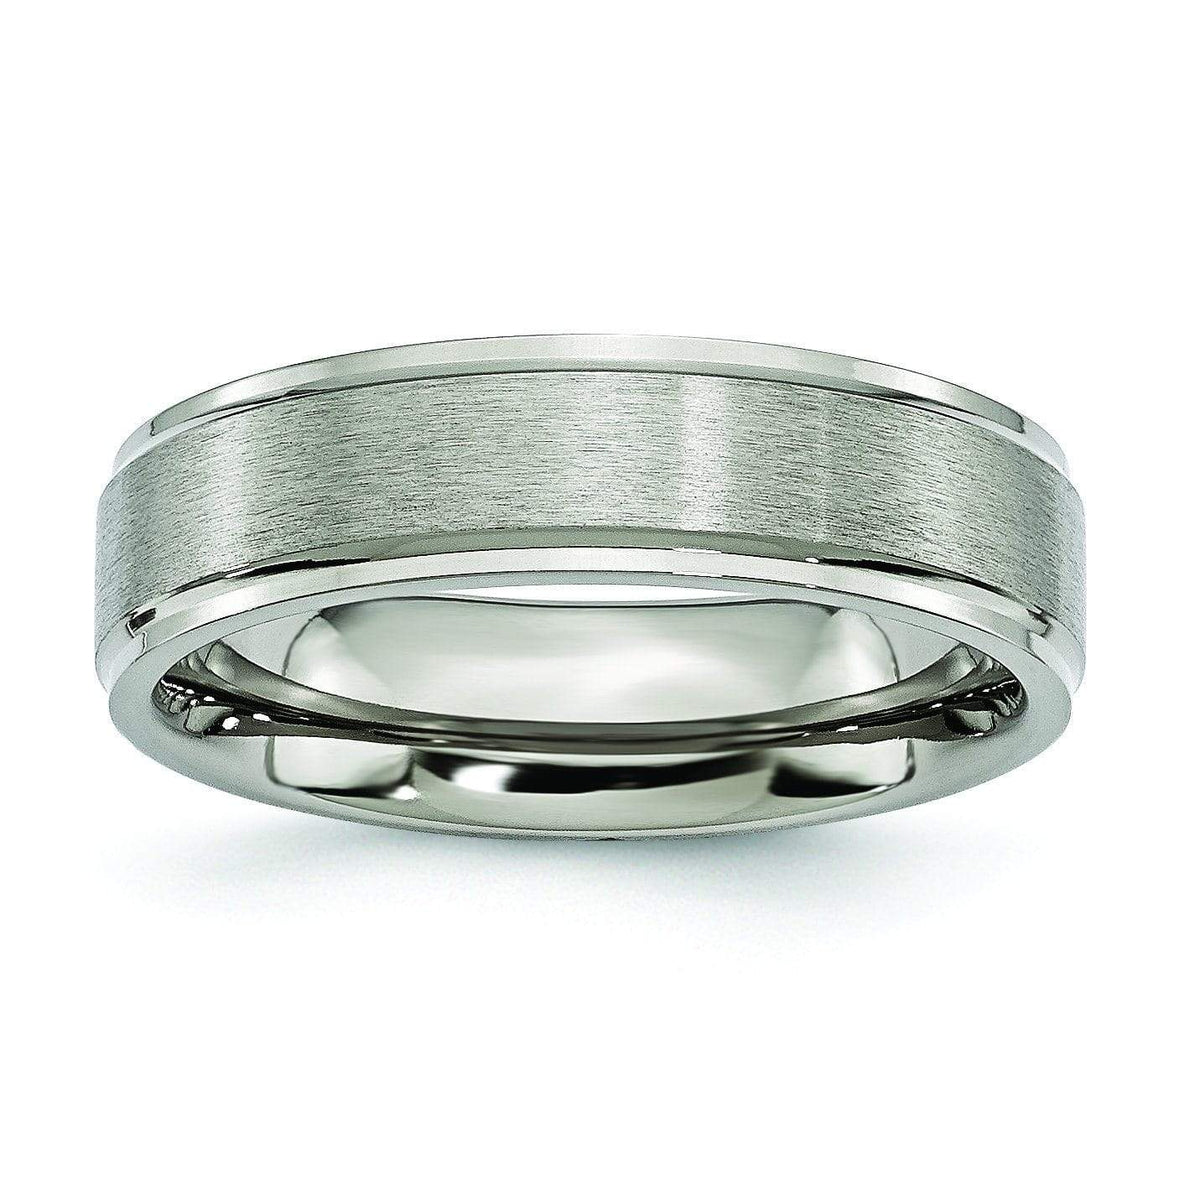 6mm Titanium Wedding Ring Step Edge Brushed Finish Titanium Wedding Rings deBebians 